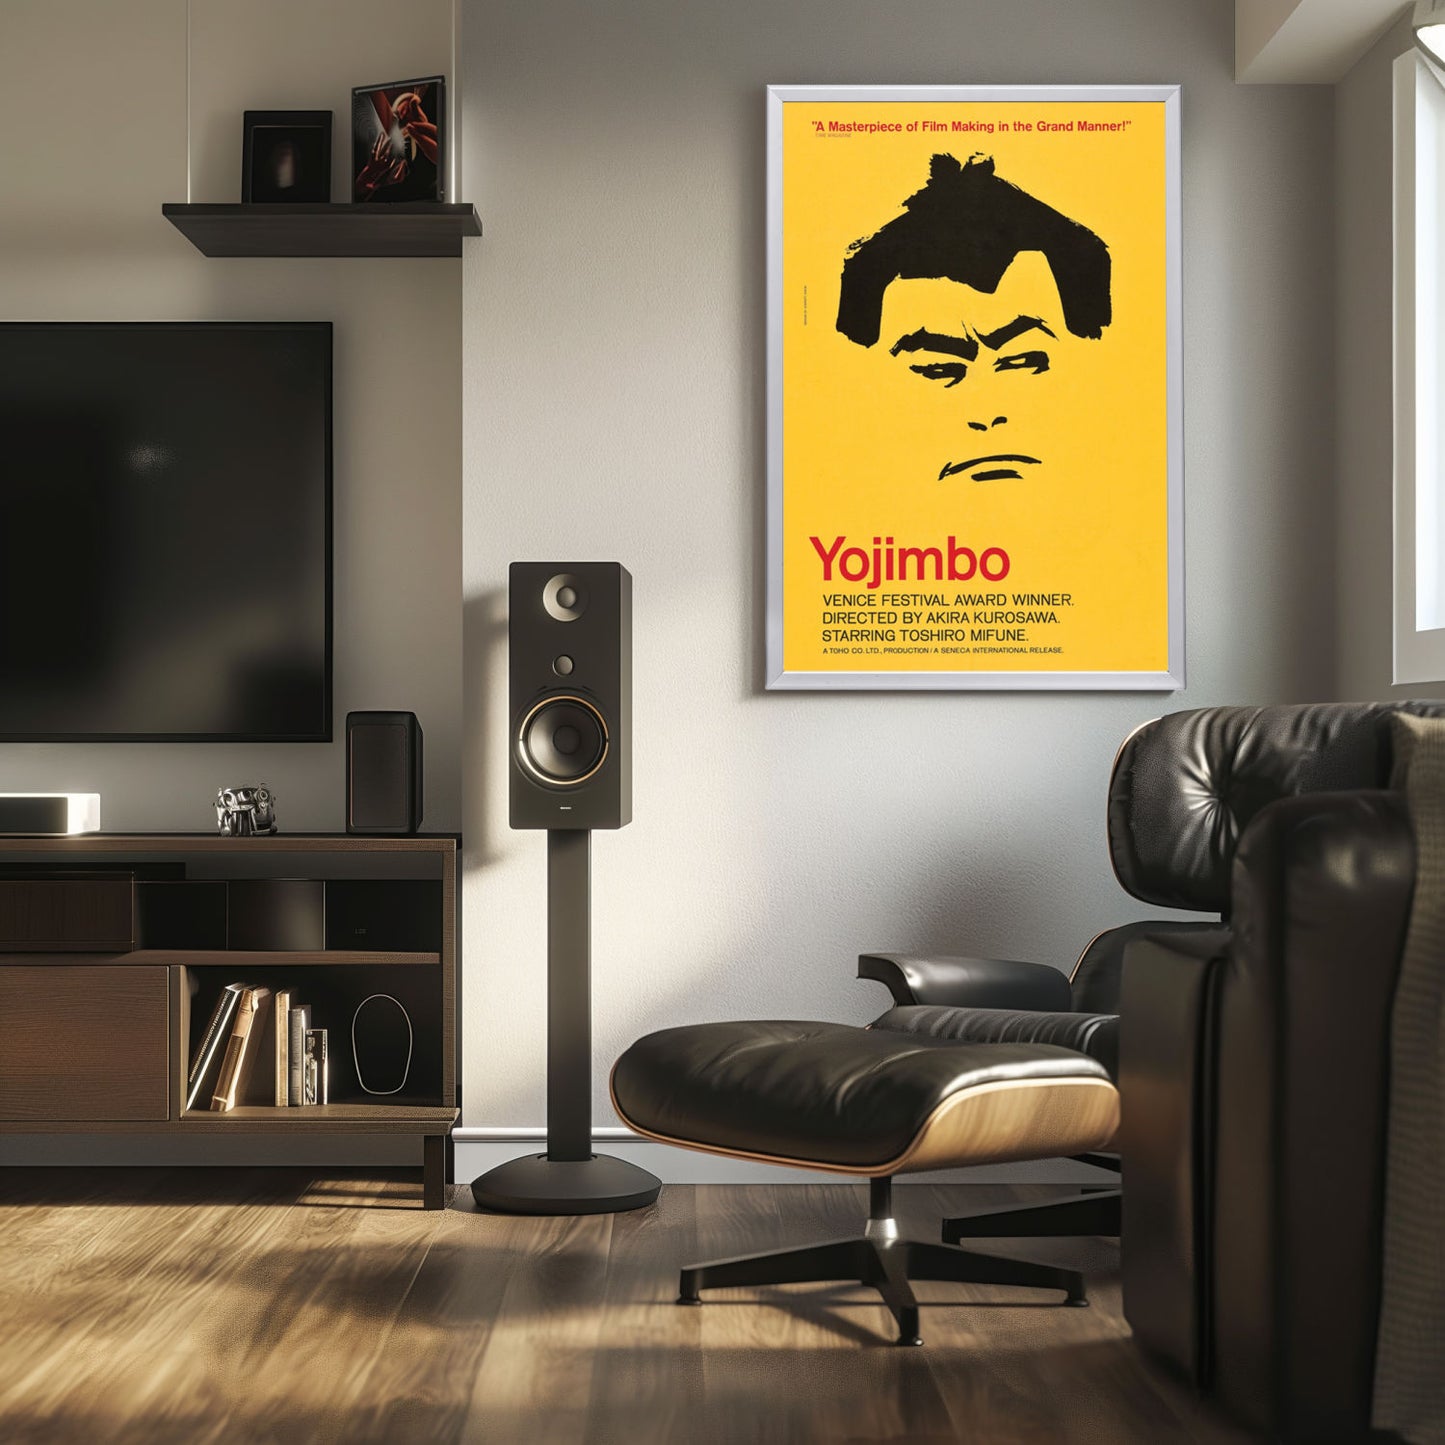 "Yojimbo" (1961) Framed Movie Poster